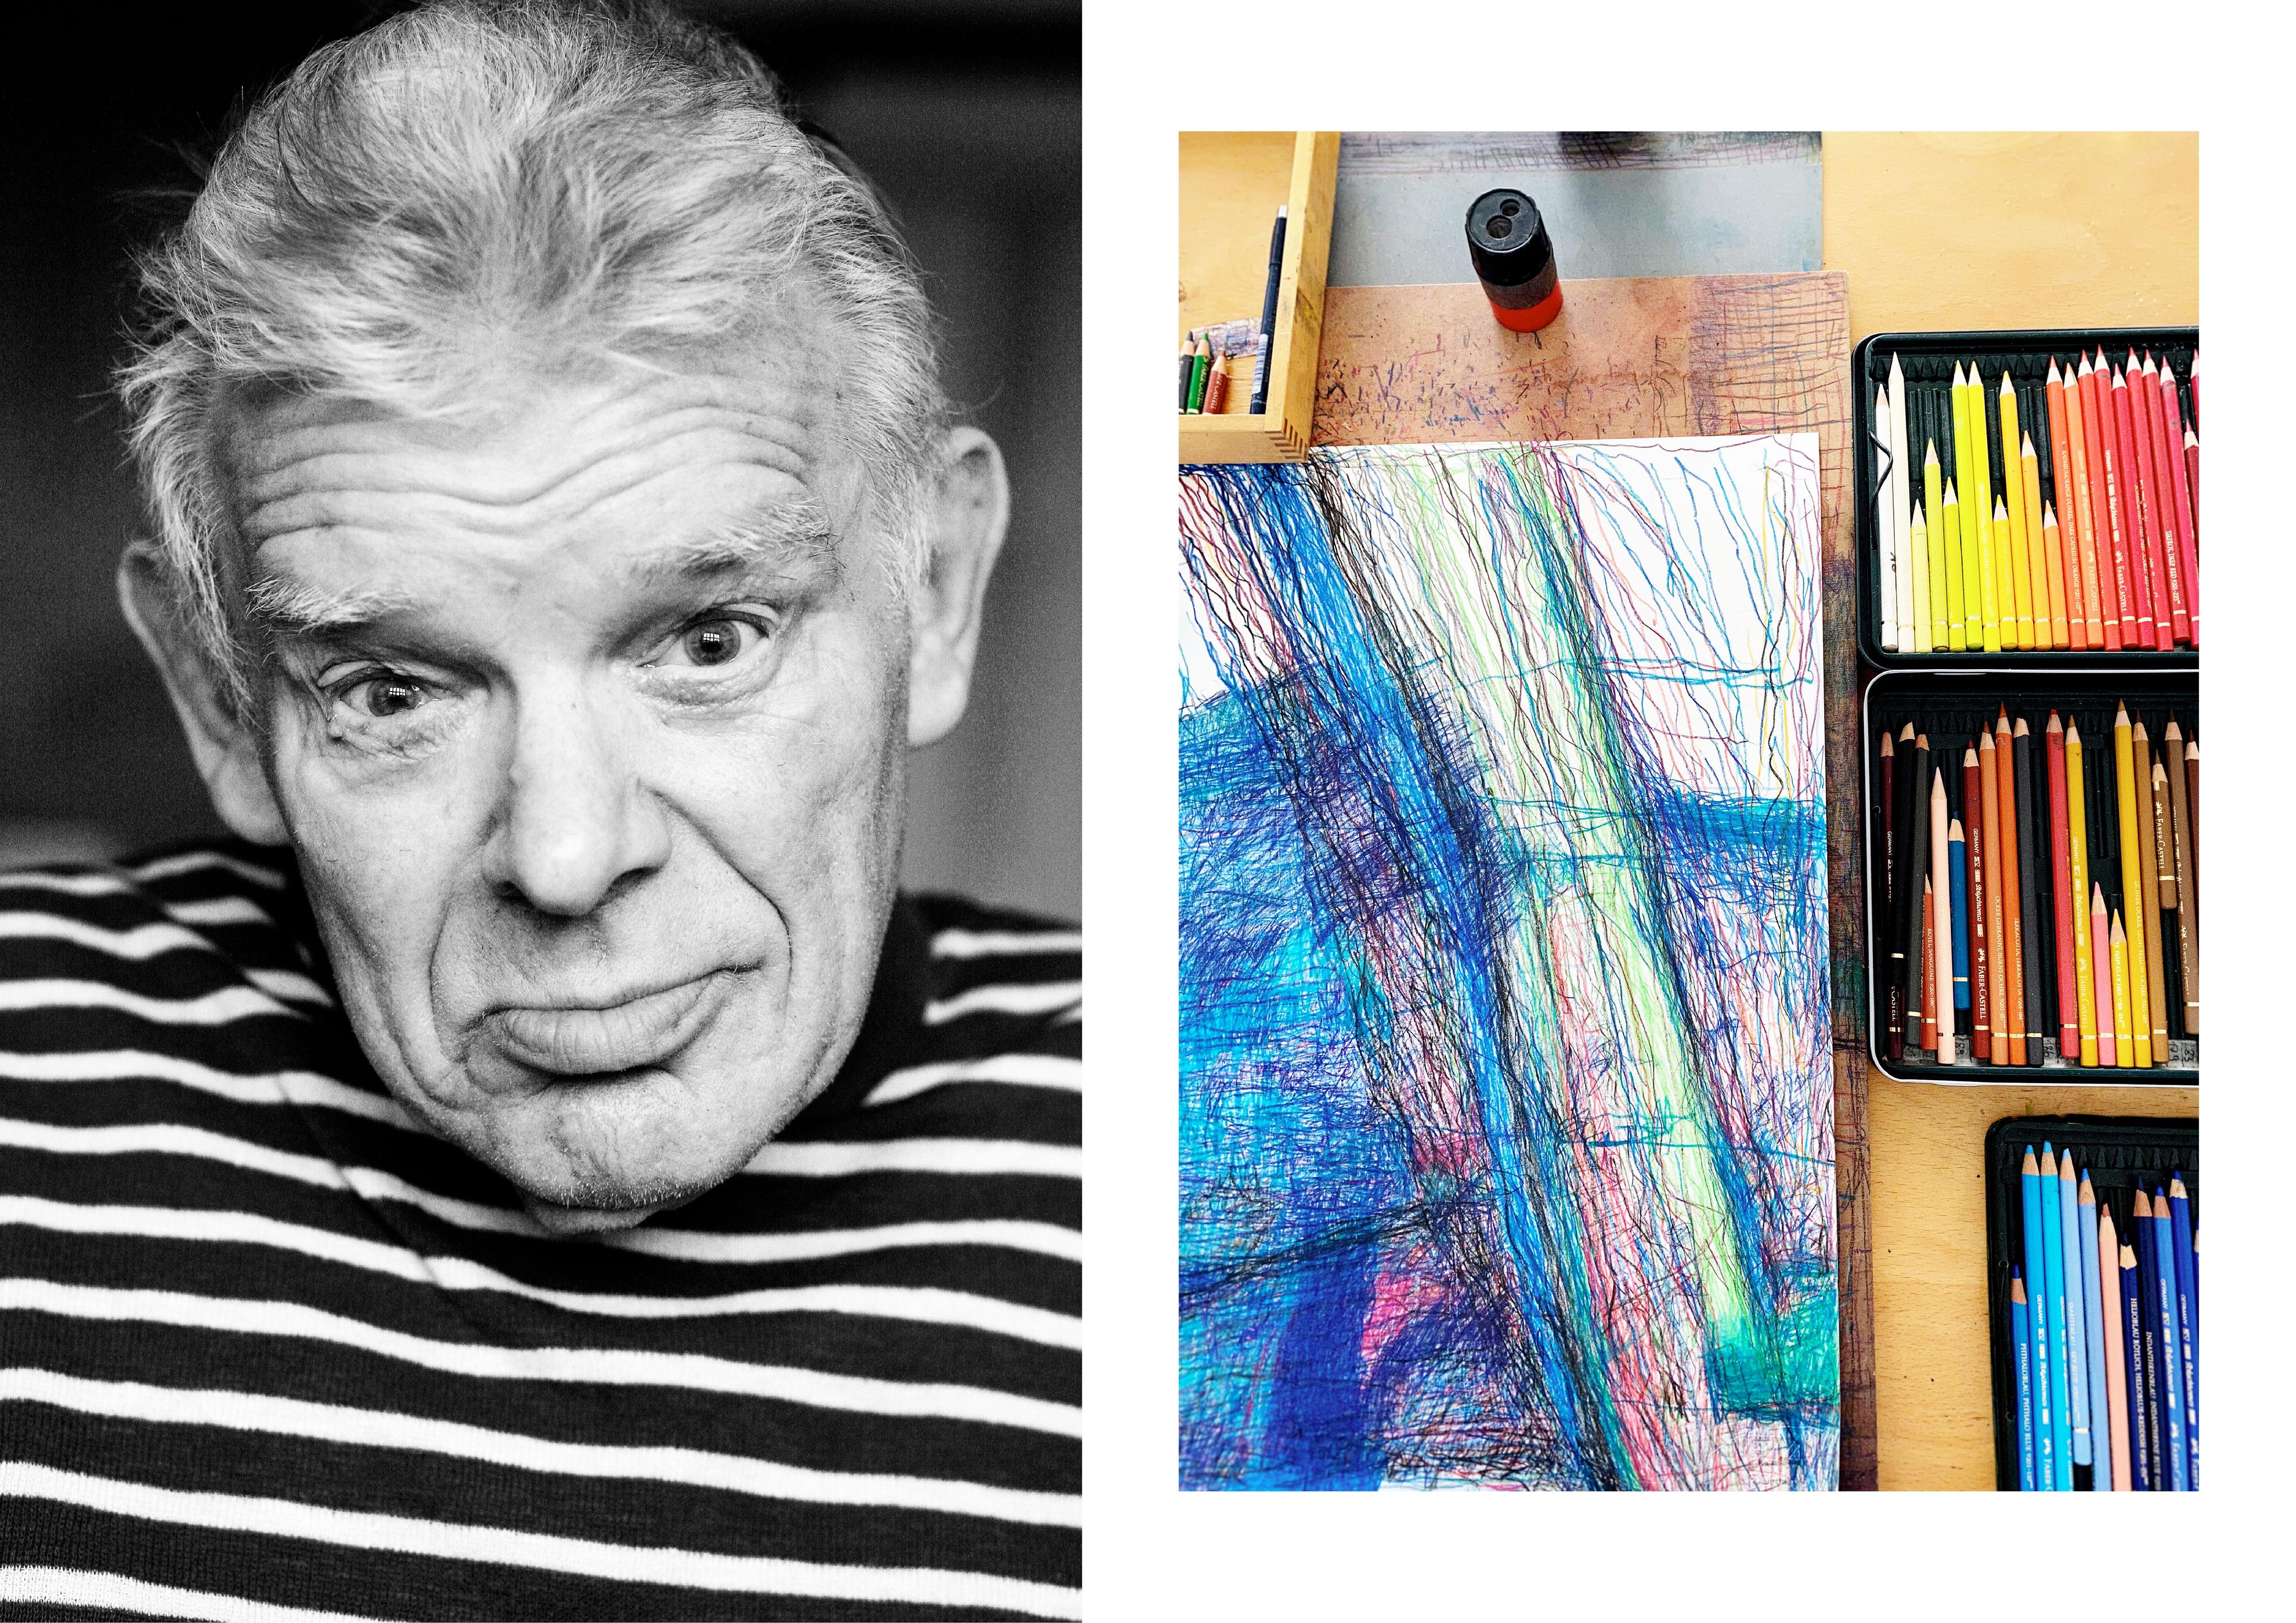 Collage aus zwei Bildern: Links: Porträt eines älteren Mannes. Rechts: Auf einem Tisch liegen Malutensilien.